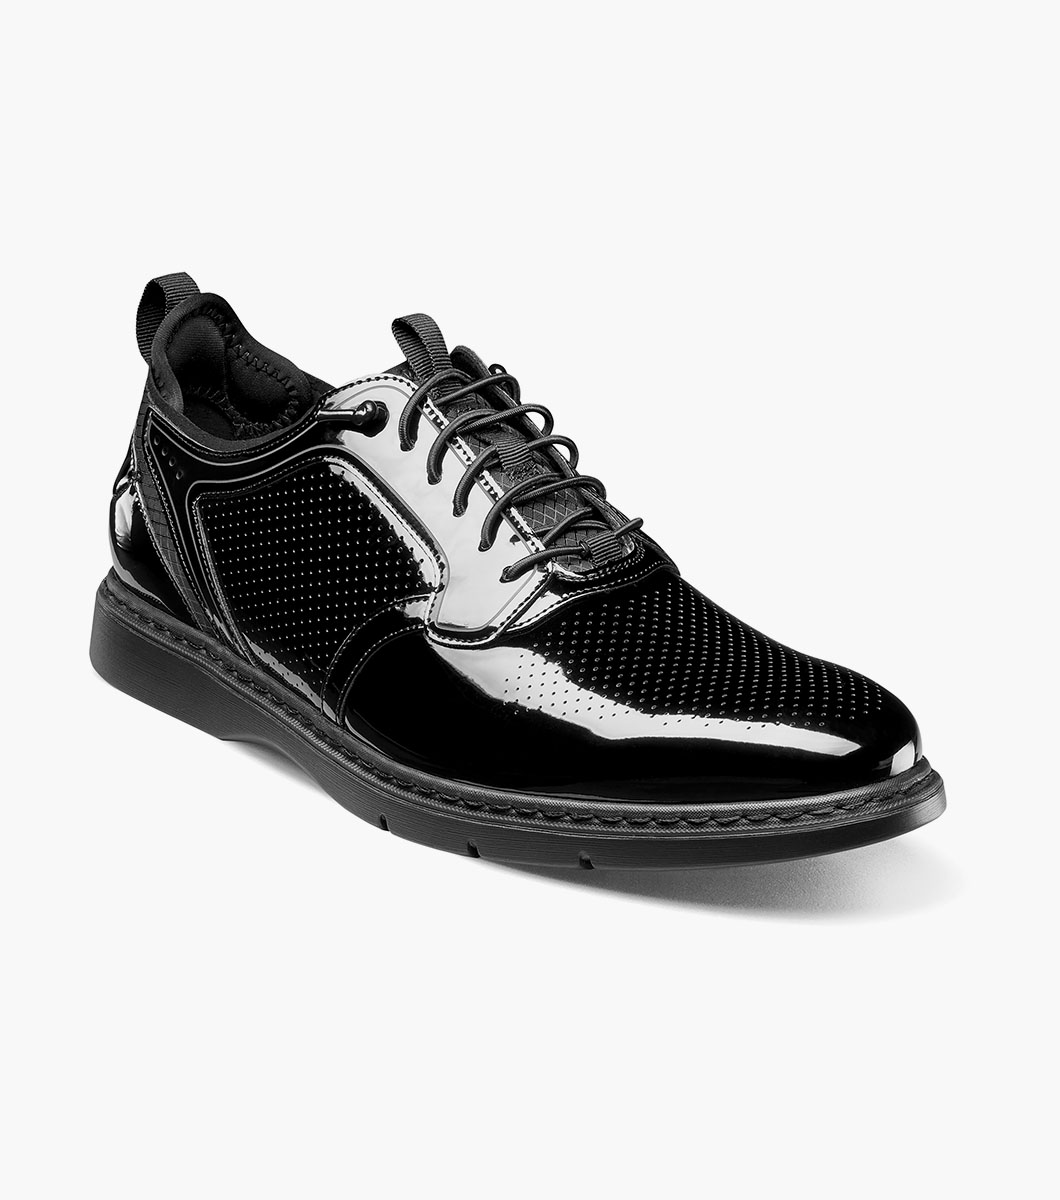 Stacy Adams Shoes Spyre Plain Toe Elastic Lace Black Patent Size 7.5